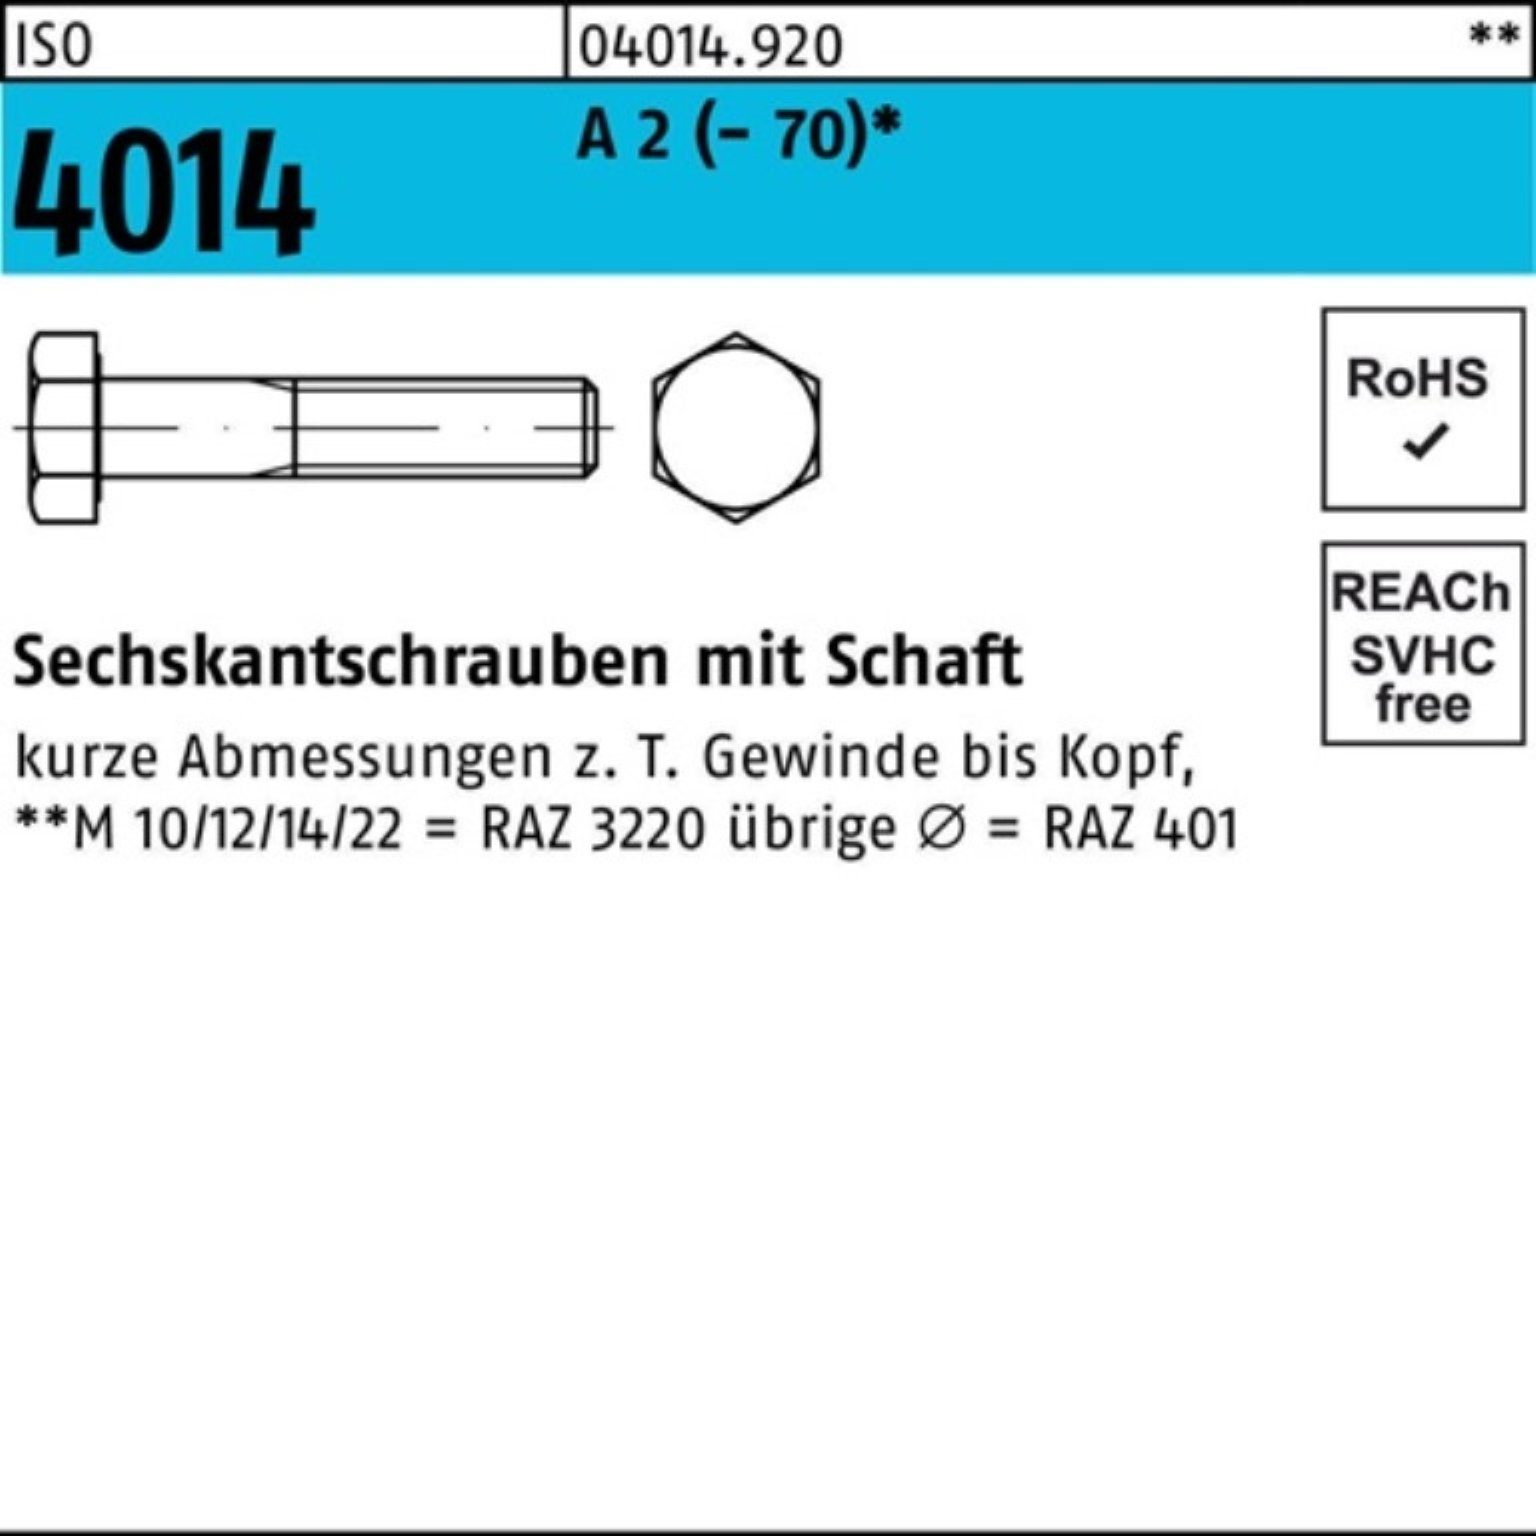 Schaft 2 Sechskantschraube 100er St 45 50 Bufab Sechskantschraube ISO (70) M12x A Pack 4014